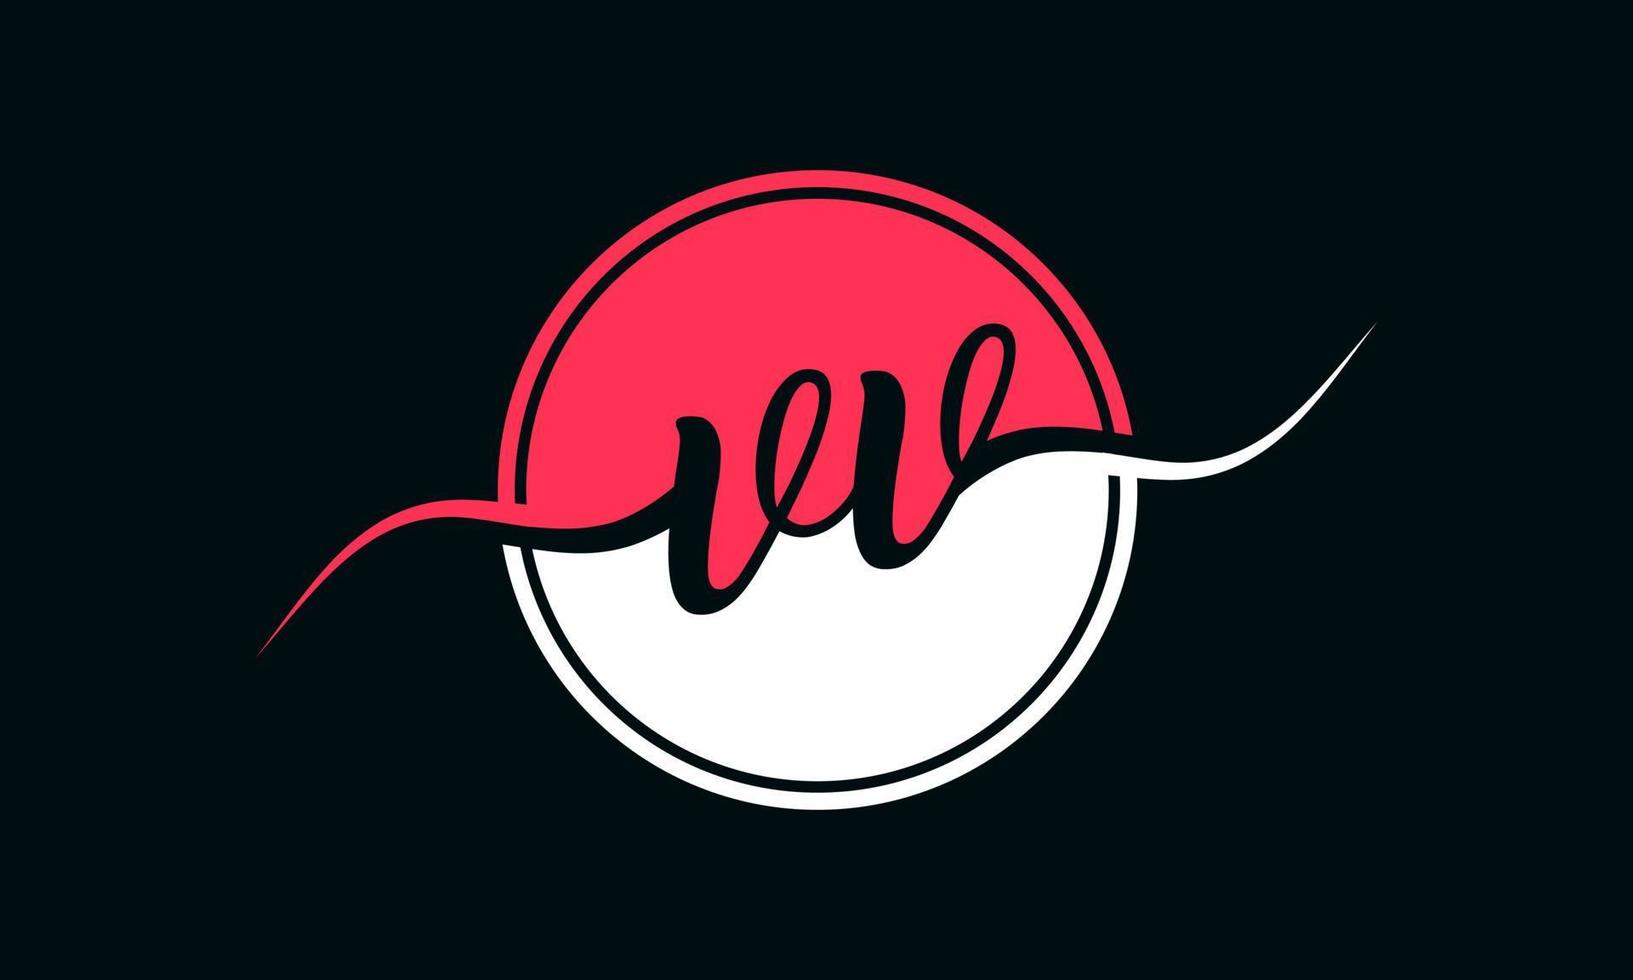 logotipo inicial da letra vv com círculo interno na cor branca e rosa. vetor profissional.